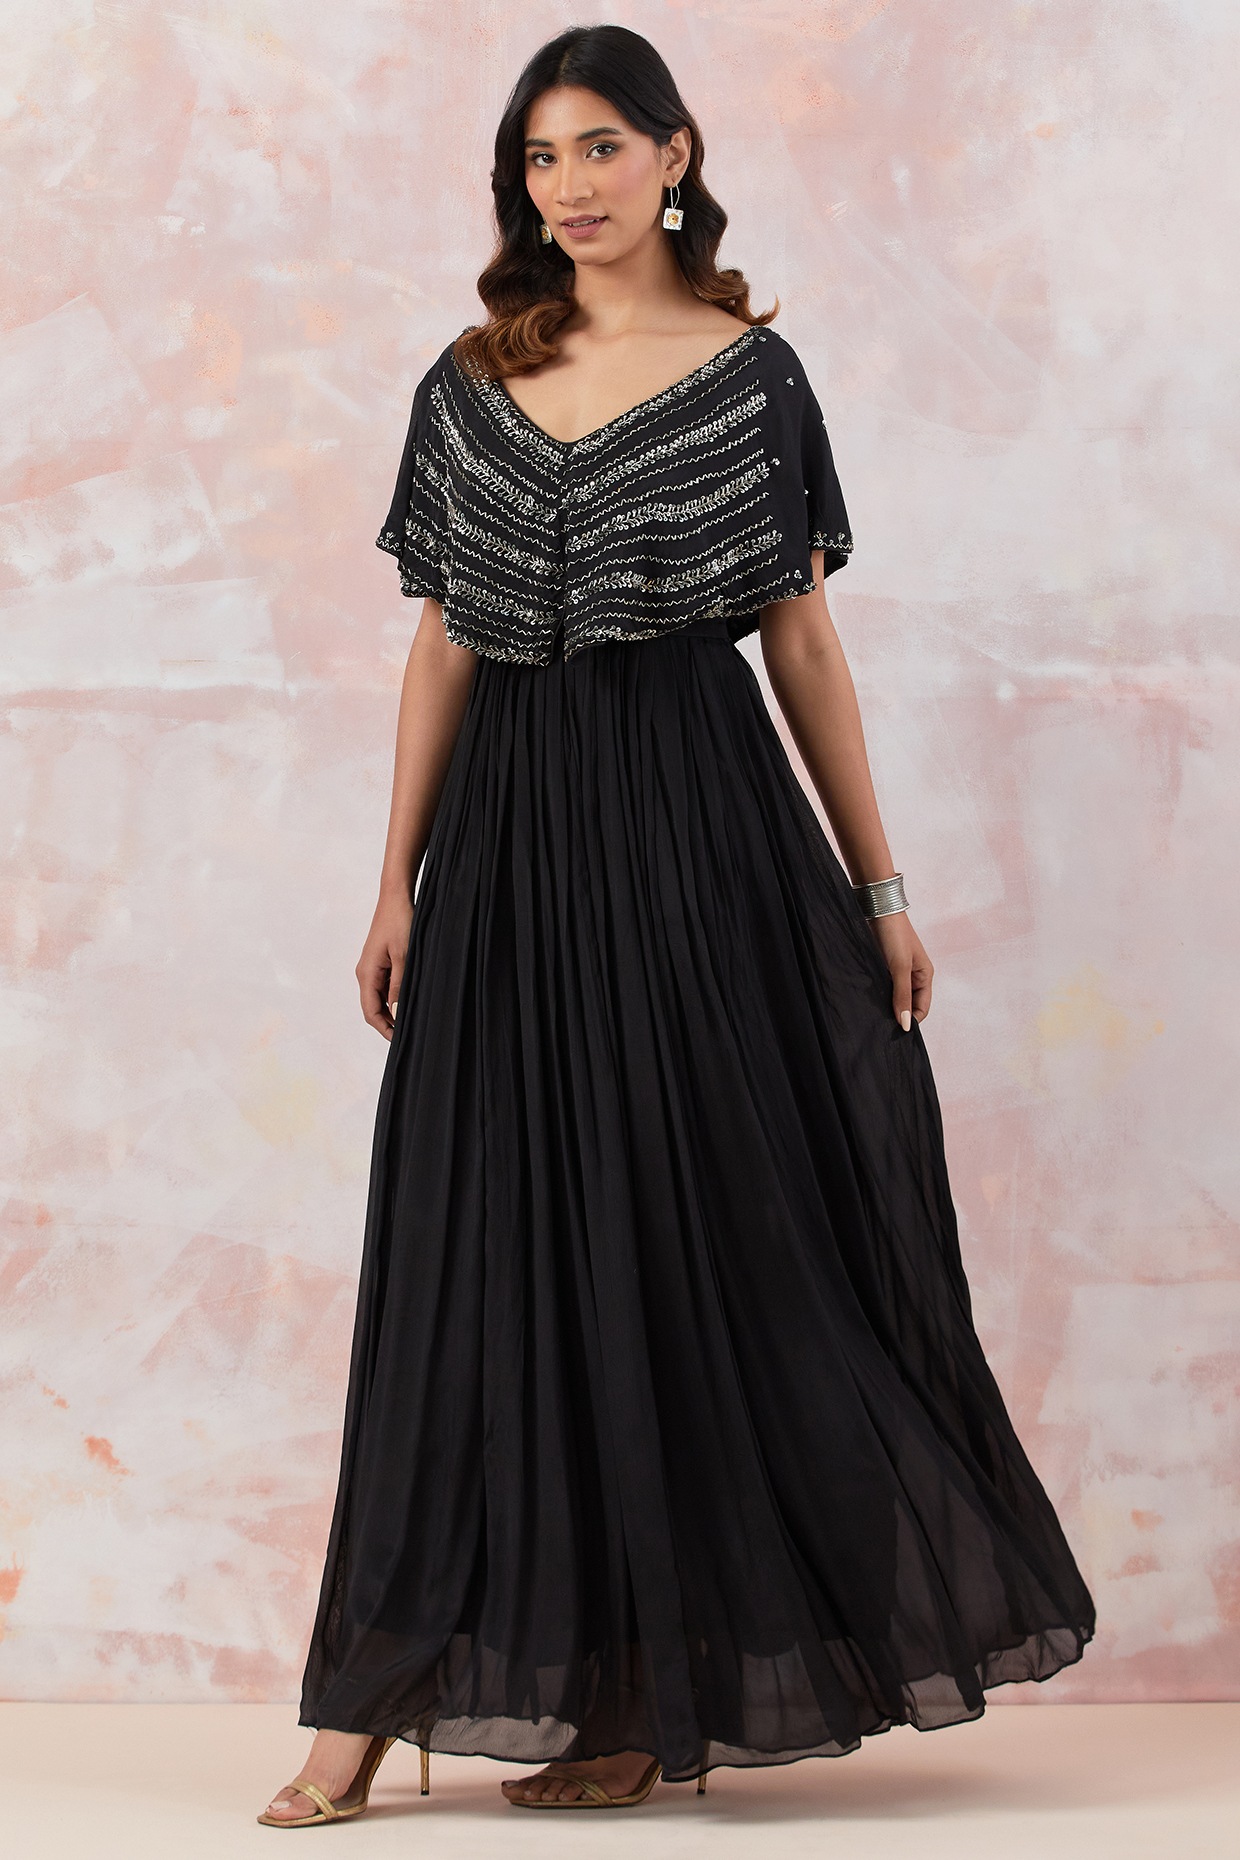 Elegant Dresses | Black Fishtail Sequined Cape Homecoming Dress – TGC  FASHION